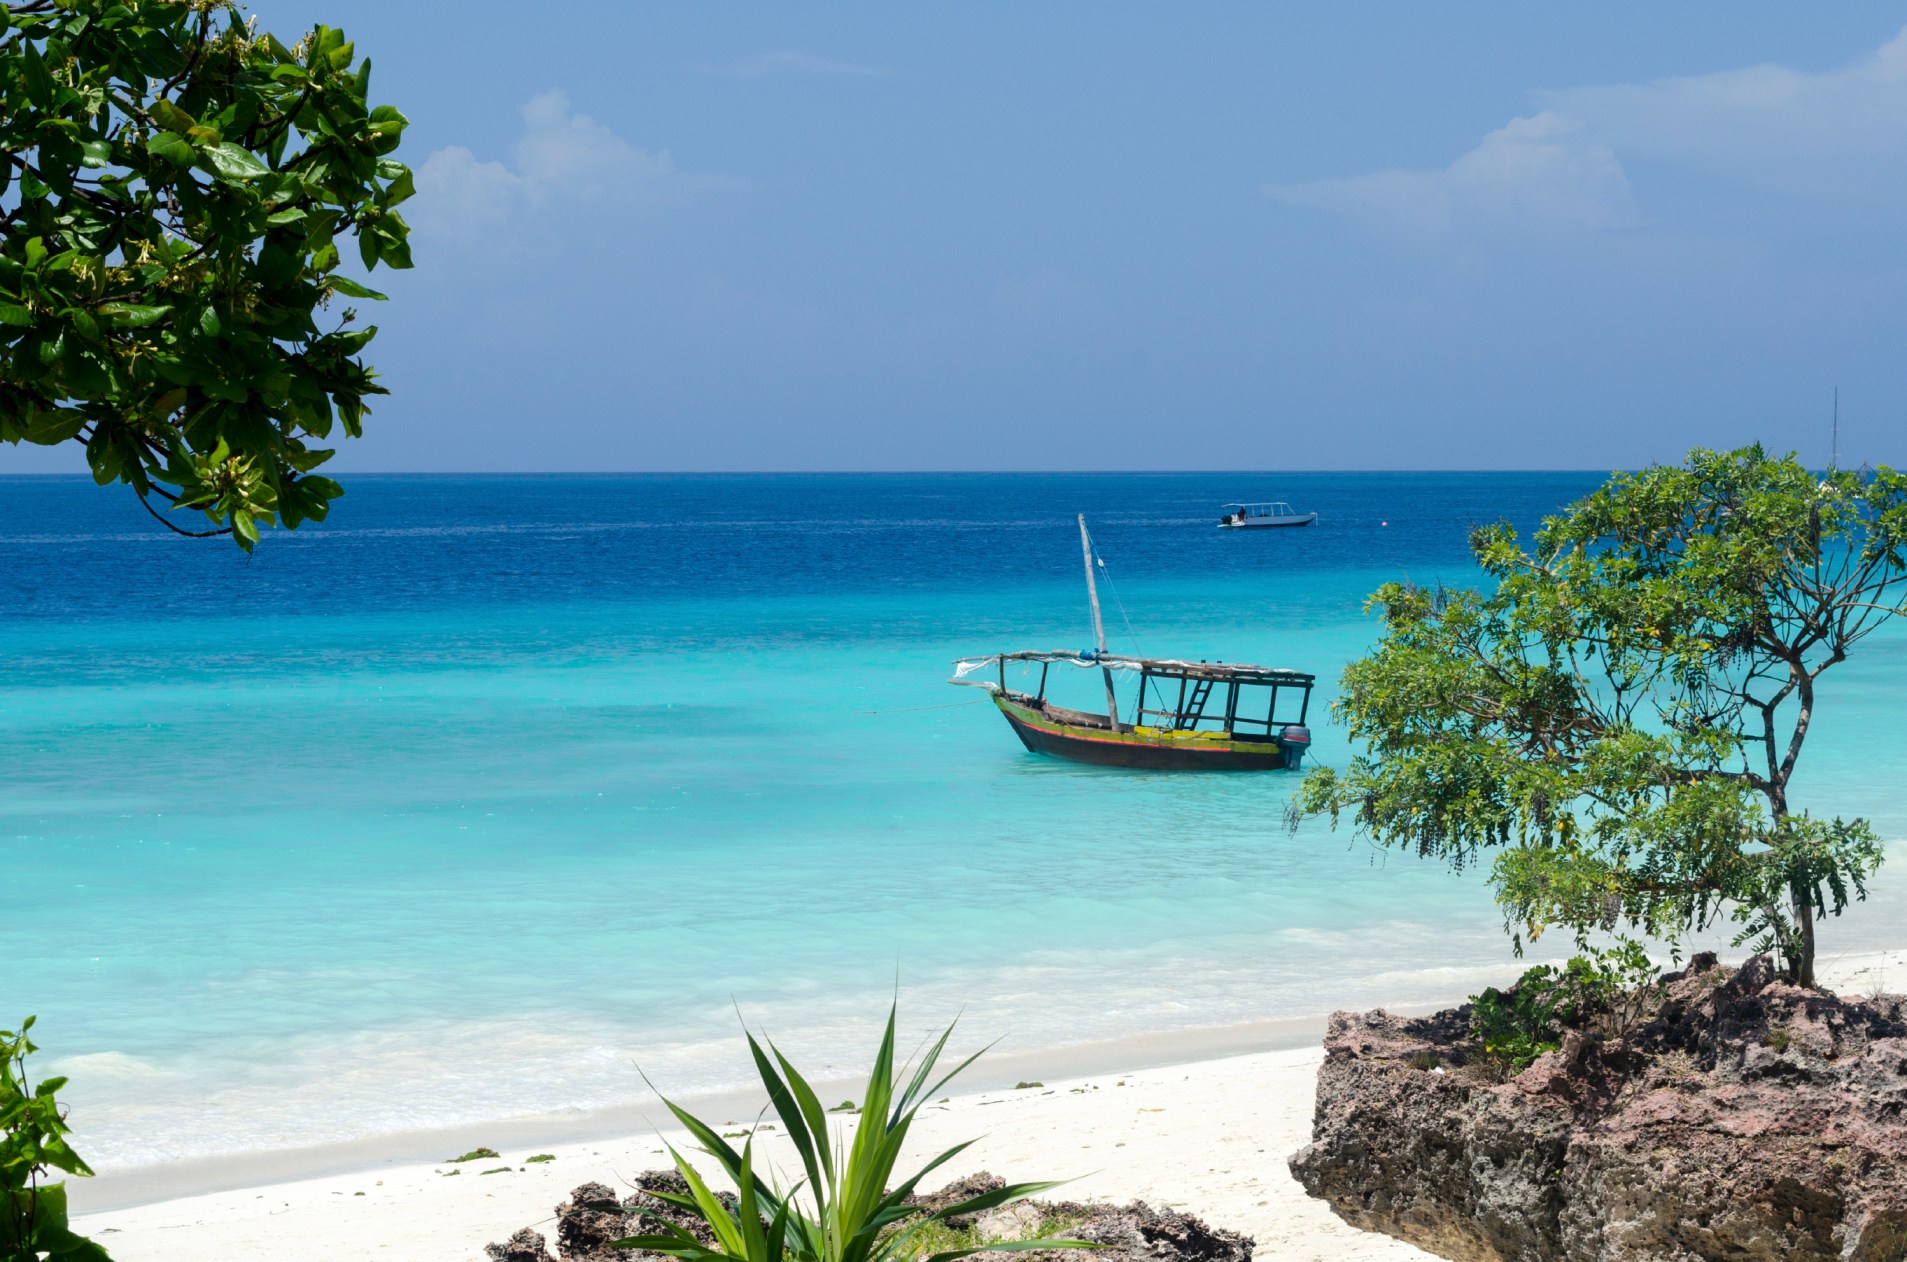 Bateau de pêche dans les eaux turquoise de Zanzibar.